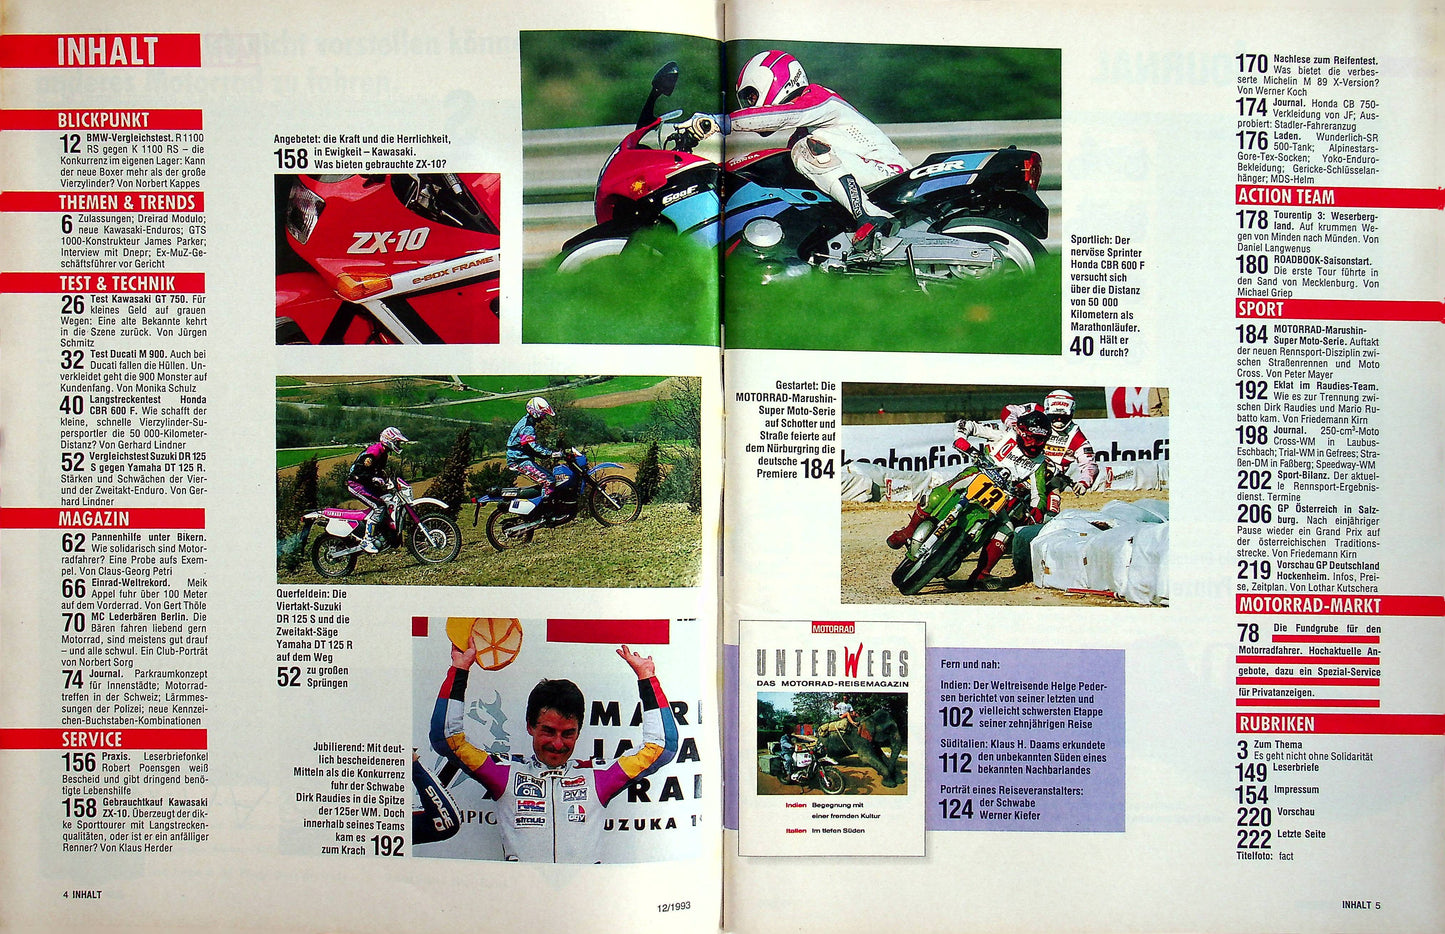 Motorrad 12/1993